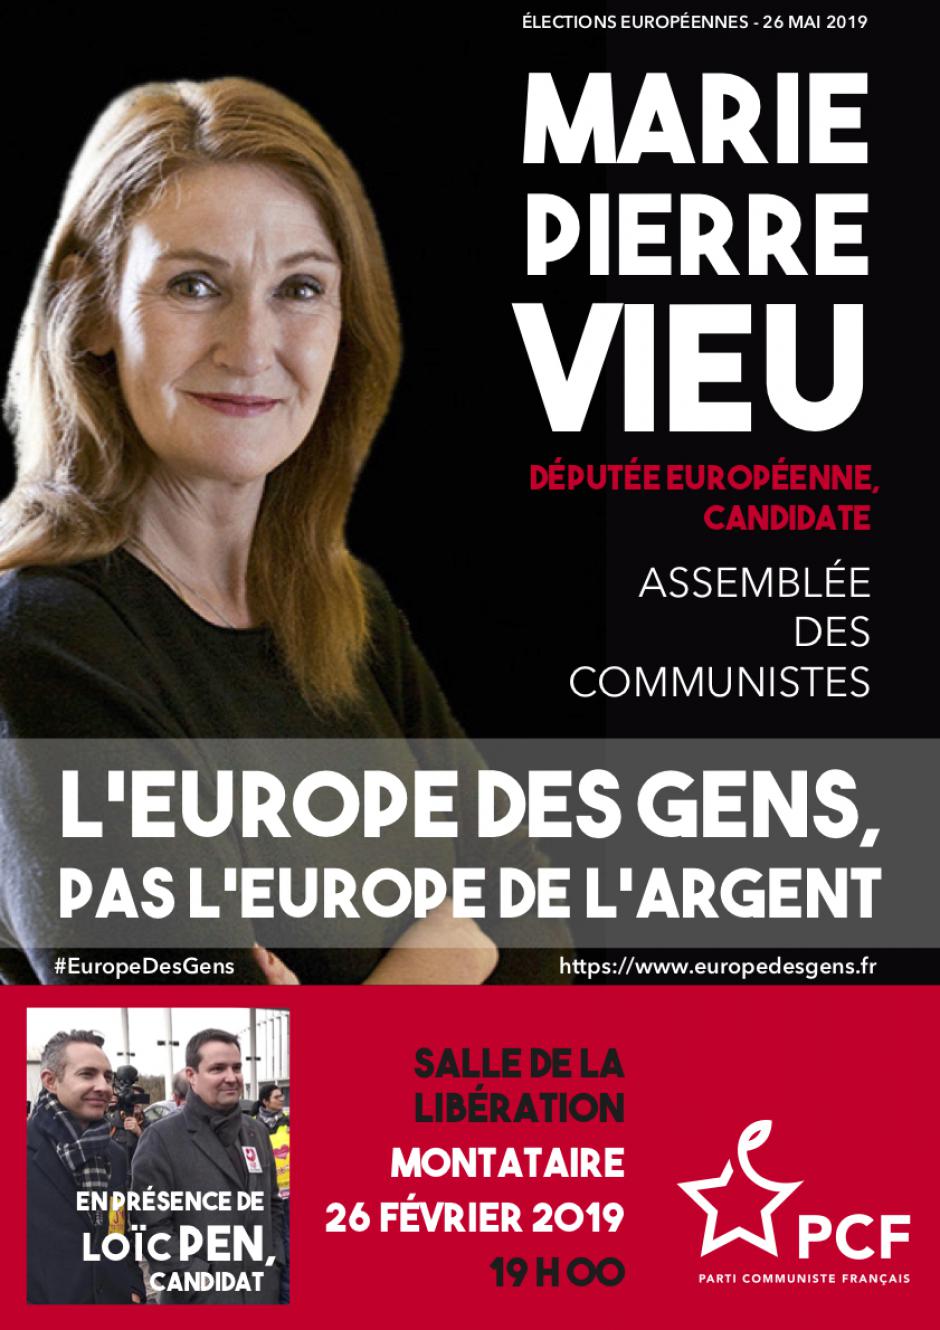 26 février, Montataire - Assemblée des communistes de l'Oise « Européennes 2019 », avec Marie-Pierre Vieu